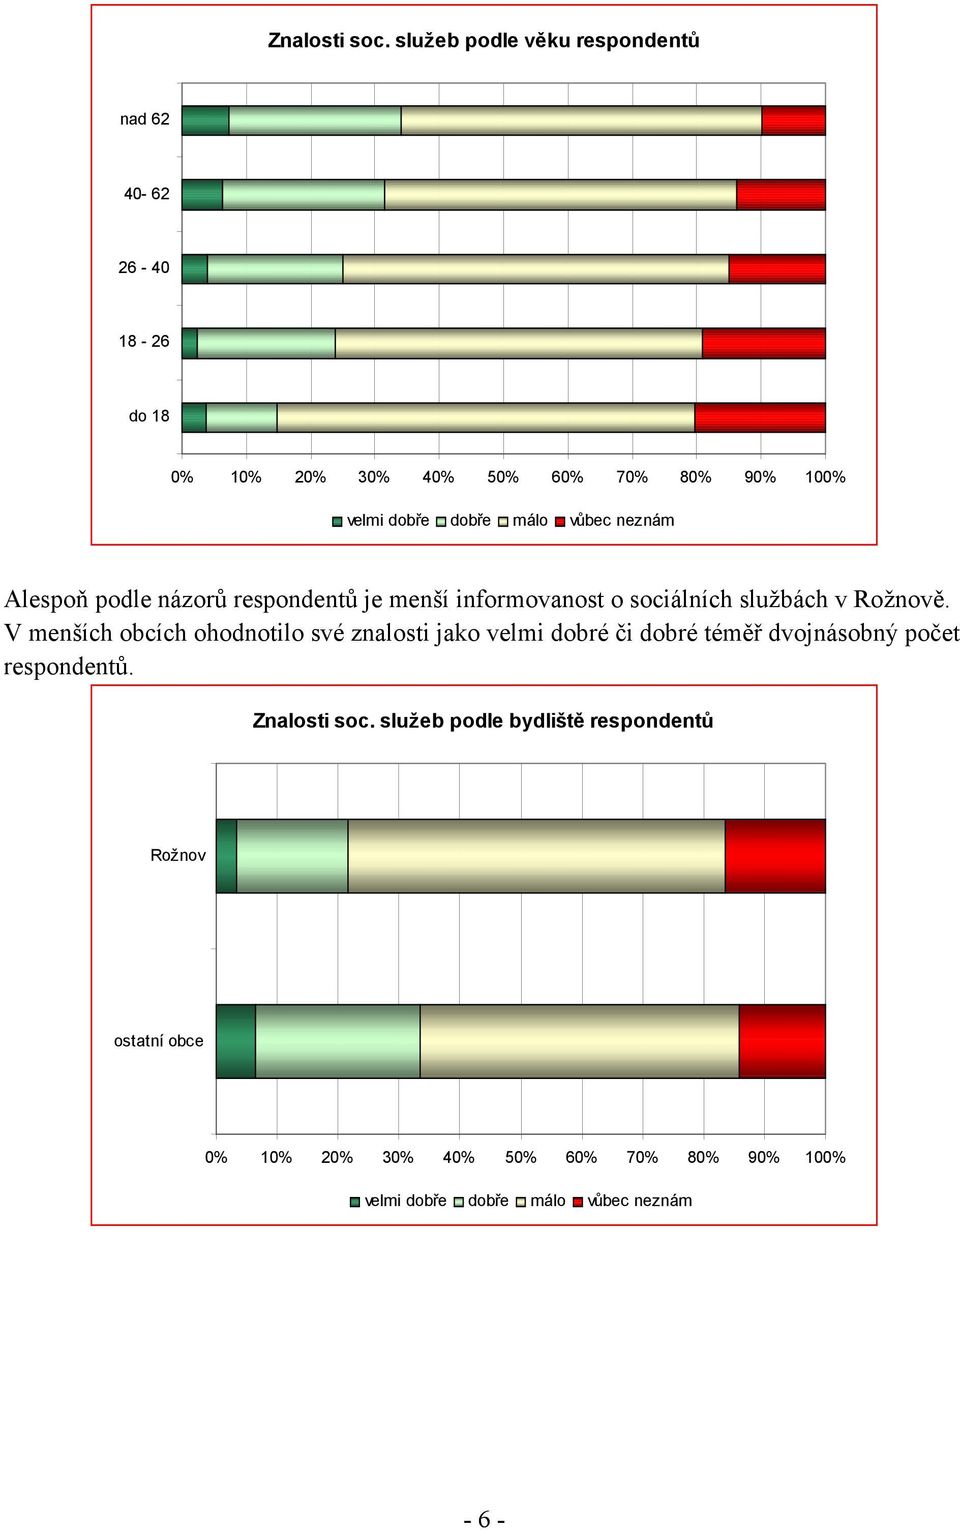 málo vůbec neznám Alespoň podle názorů respondentů je menší informovanost o sociálních službách v Rožnově.